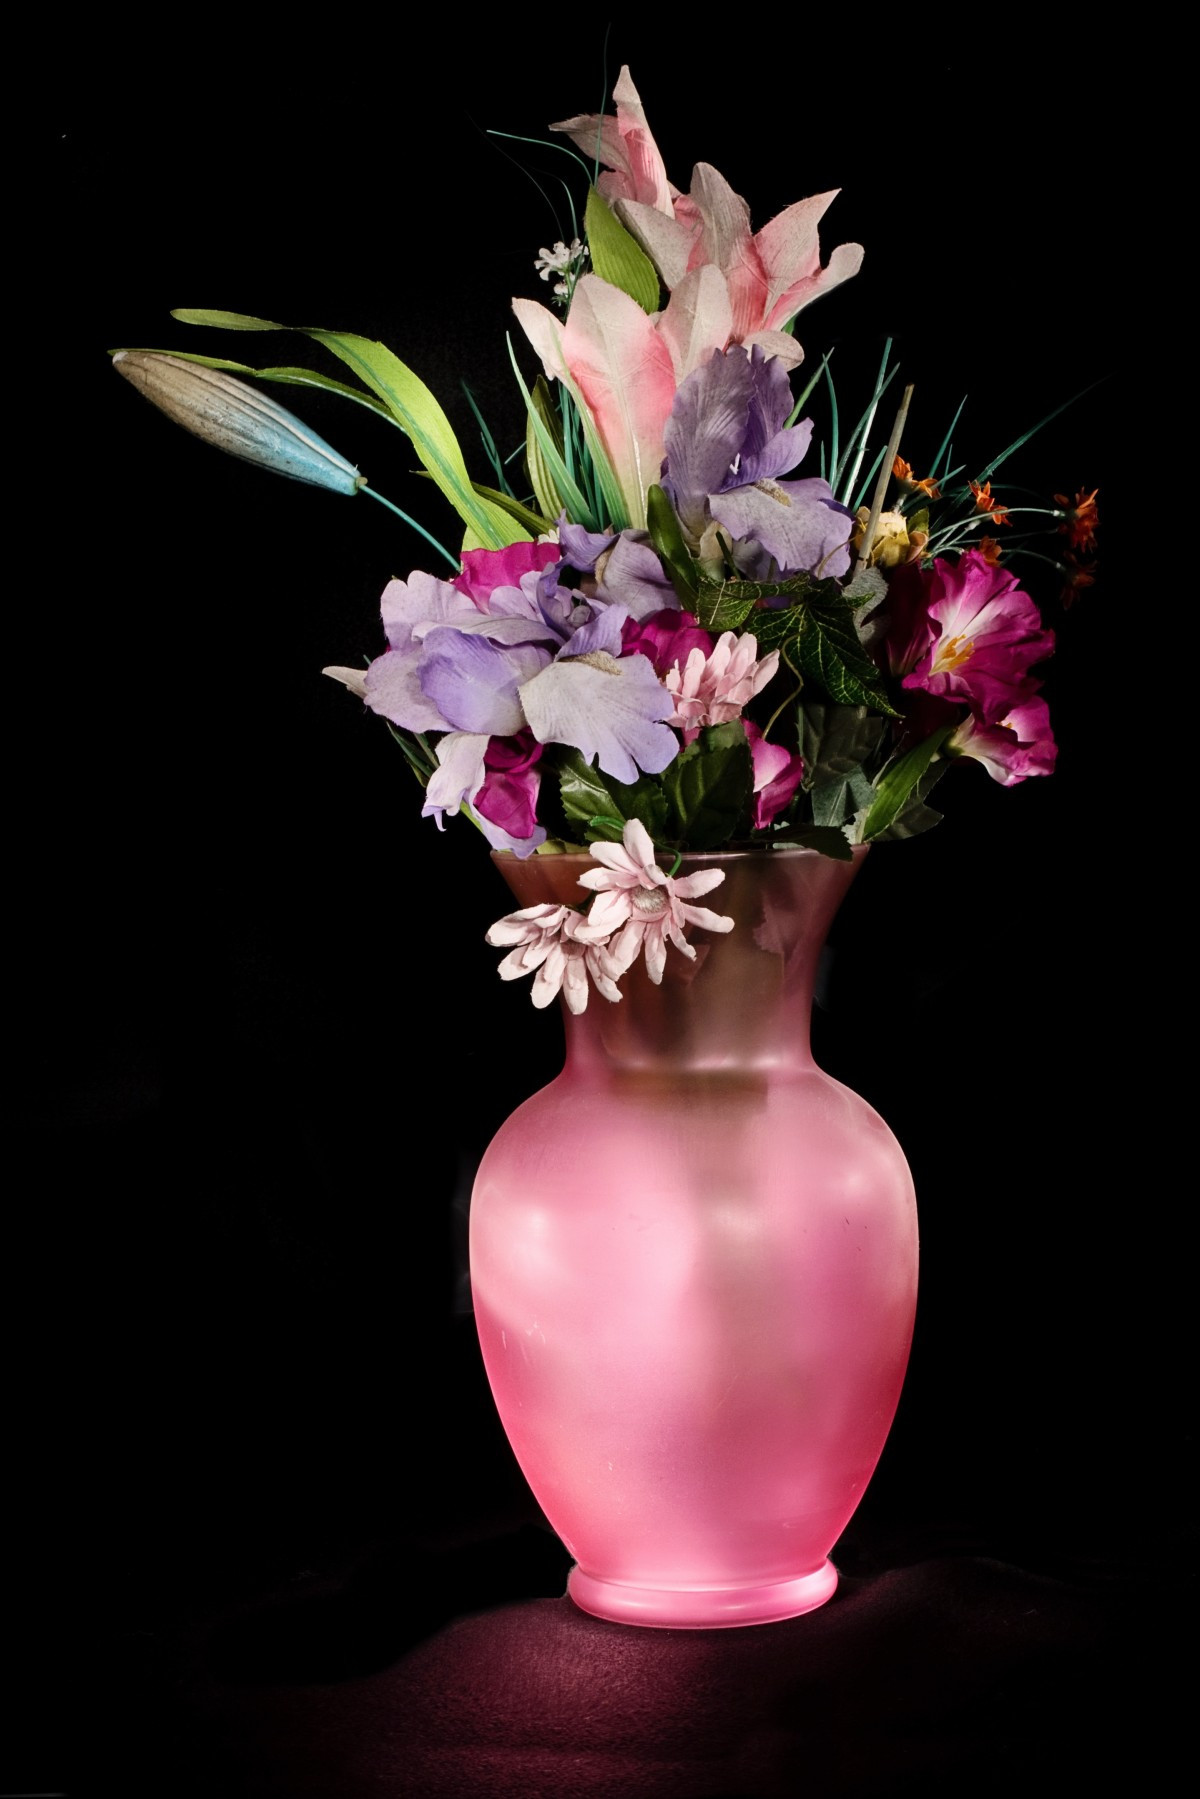 Pink Roses In Glass Vase Of Free Images Purple Vase Flora Still Life Artwork Art Picture for Plant Flower Purple Petal Vase Pink